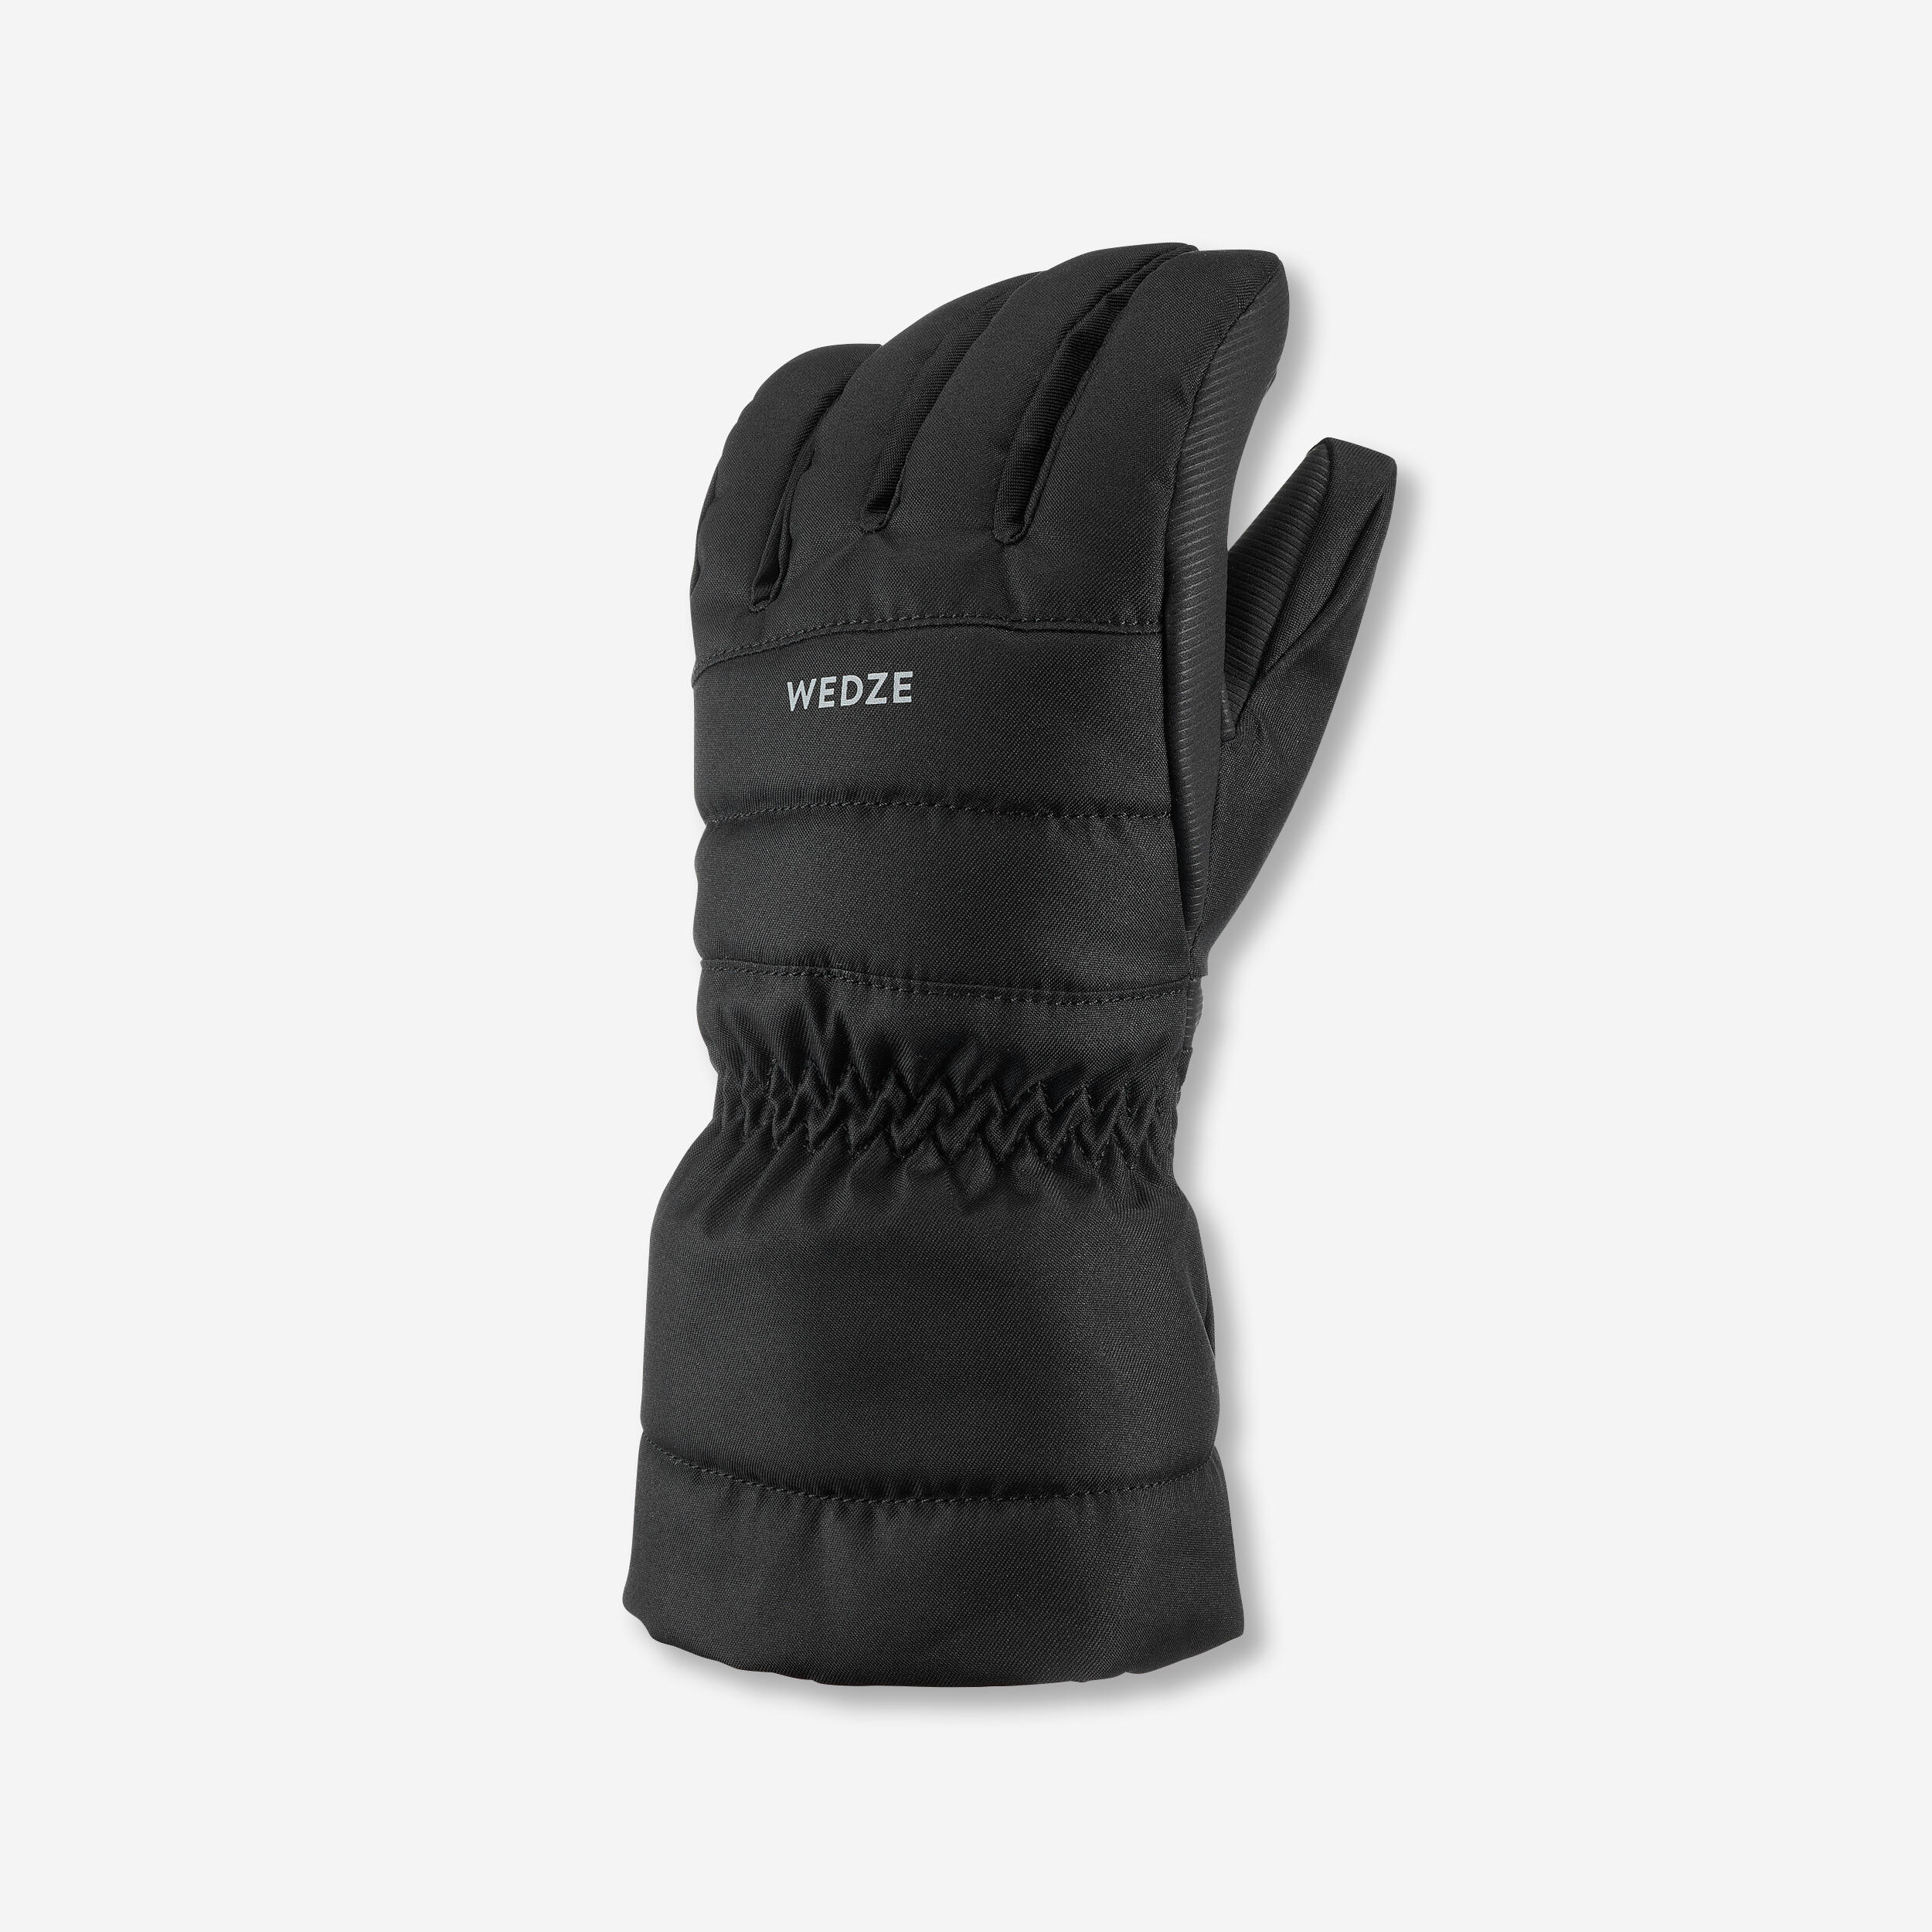 gants de ski enfant chauds et impermeables 500 noir - wedze